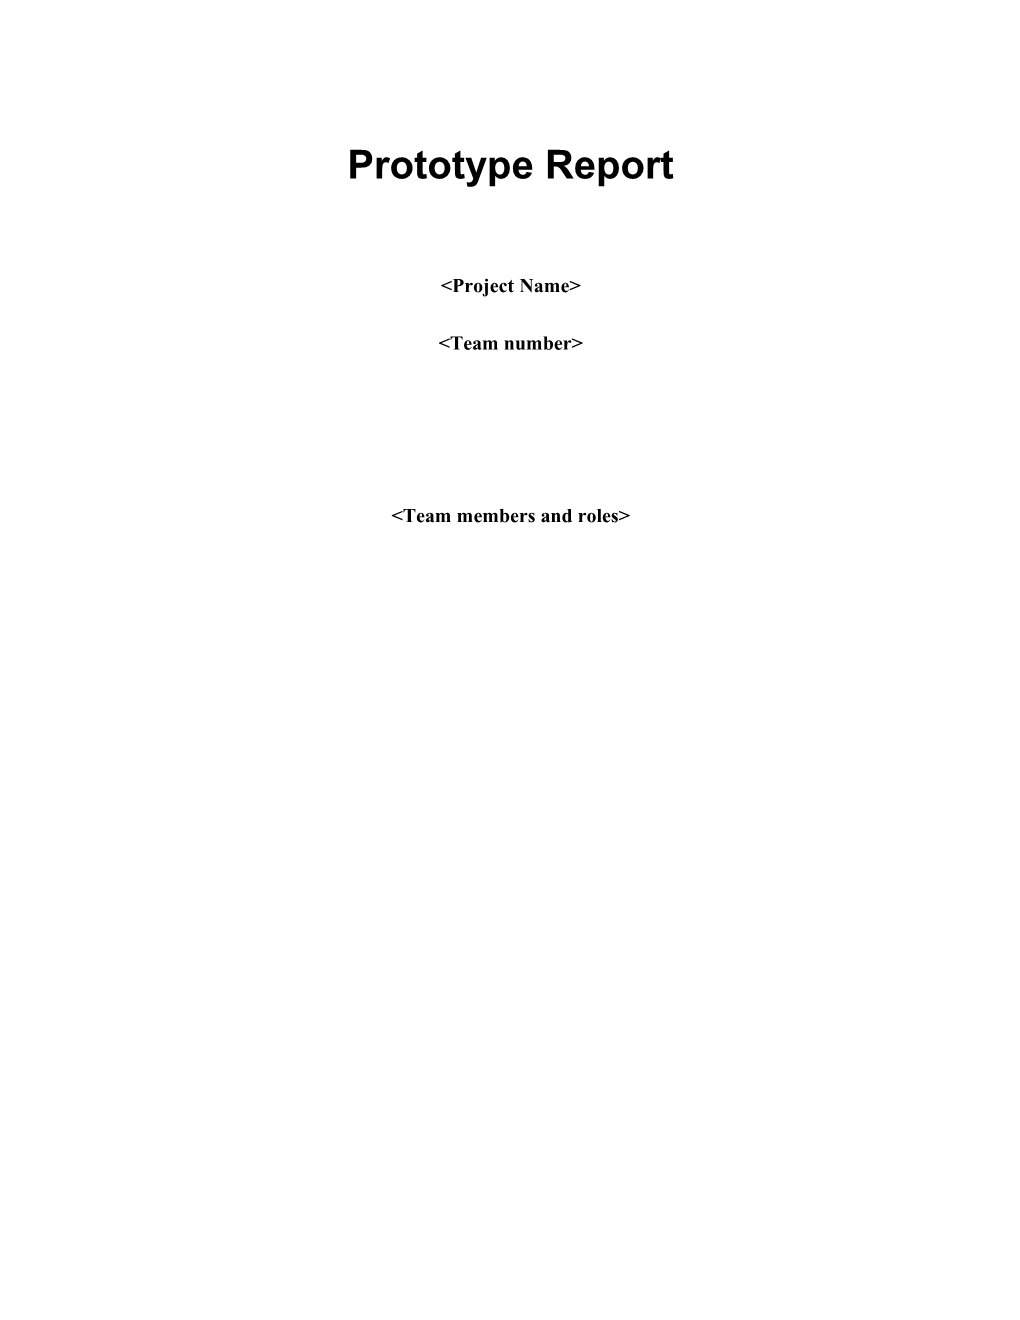 Prototype Reportversion X.X